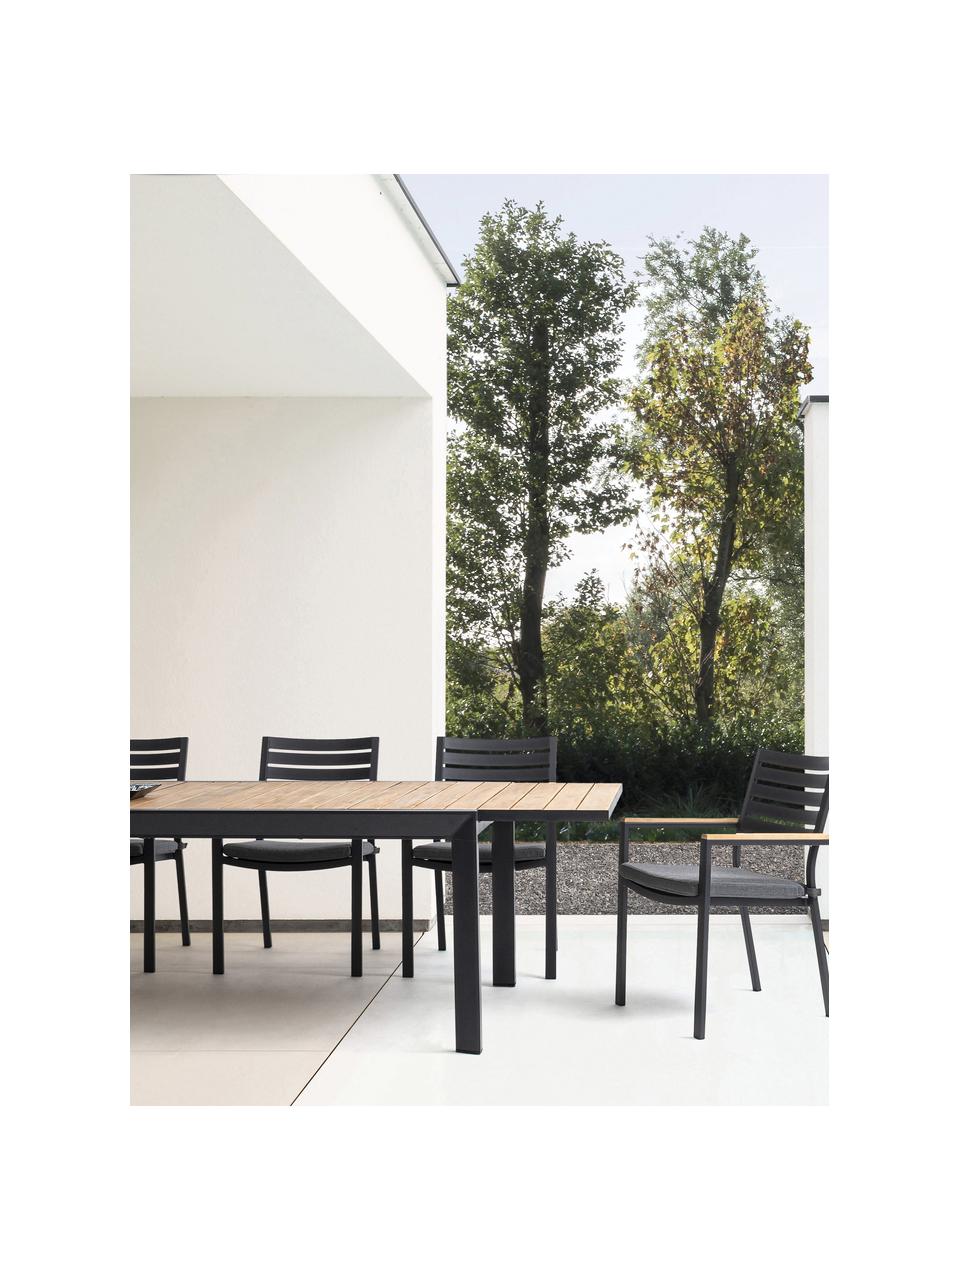 Krzesło ogrodowe z podłokietnikami Belmar, Tapicerka: 100% polipropylen, Stelaż: aluminium malowane proszk, Ciemnoszara tkanina, antracytowy, S 60 x G 58 cm